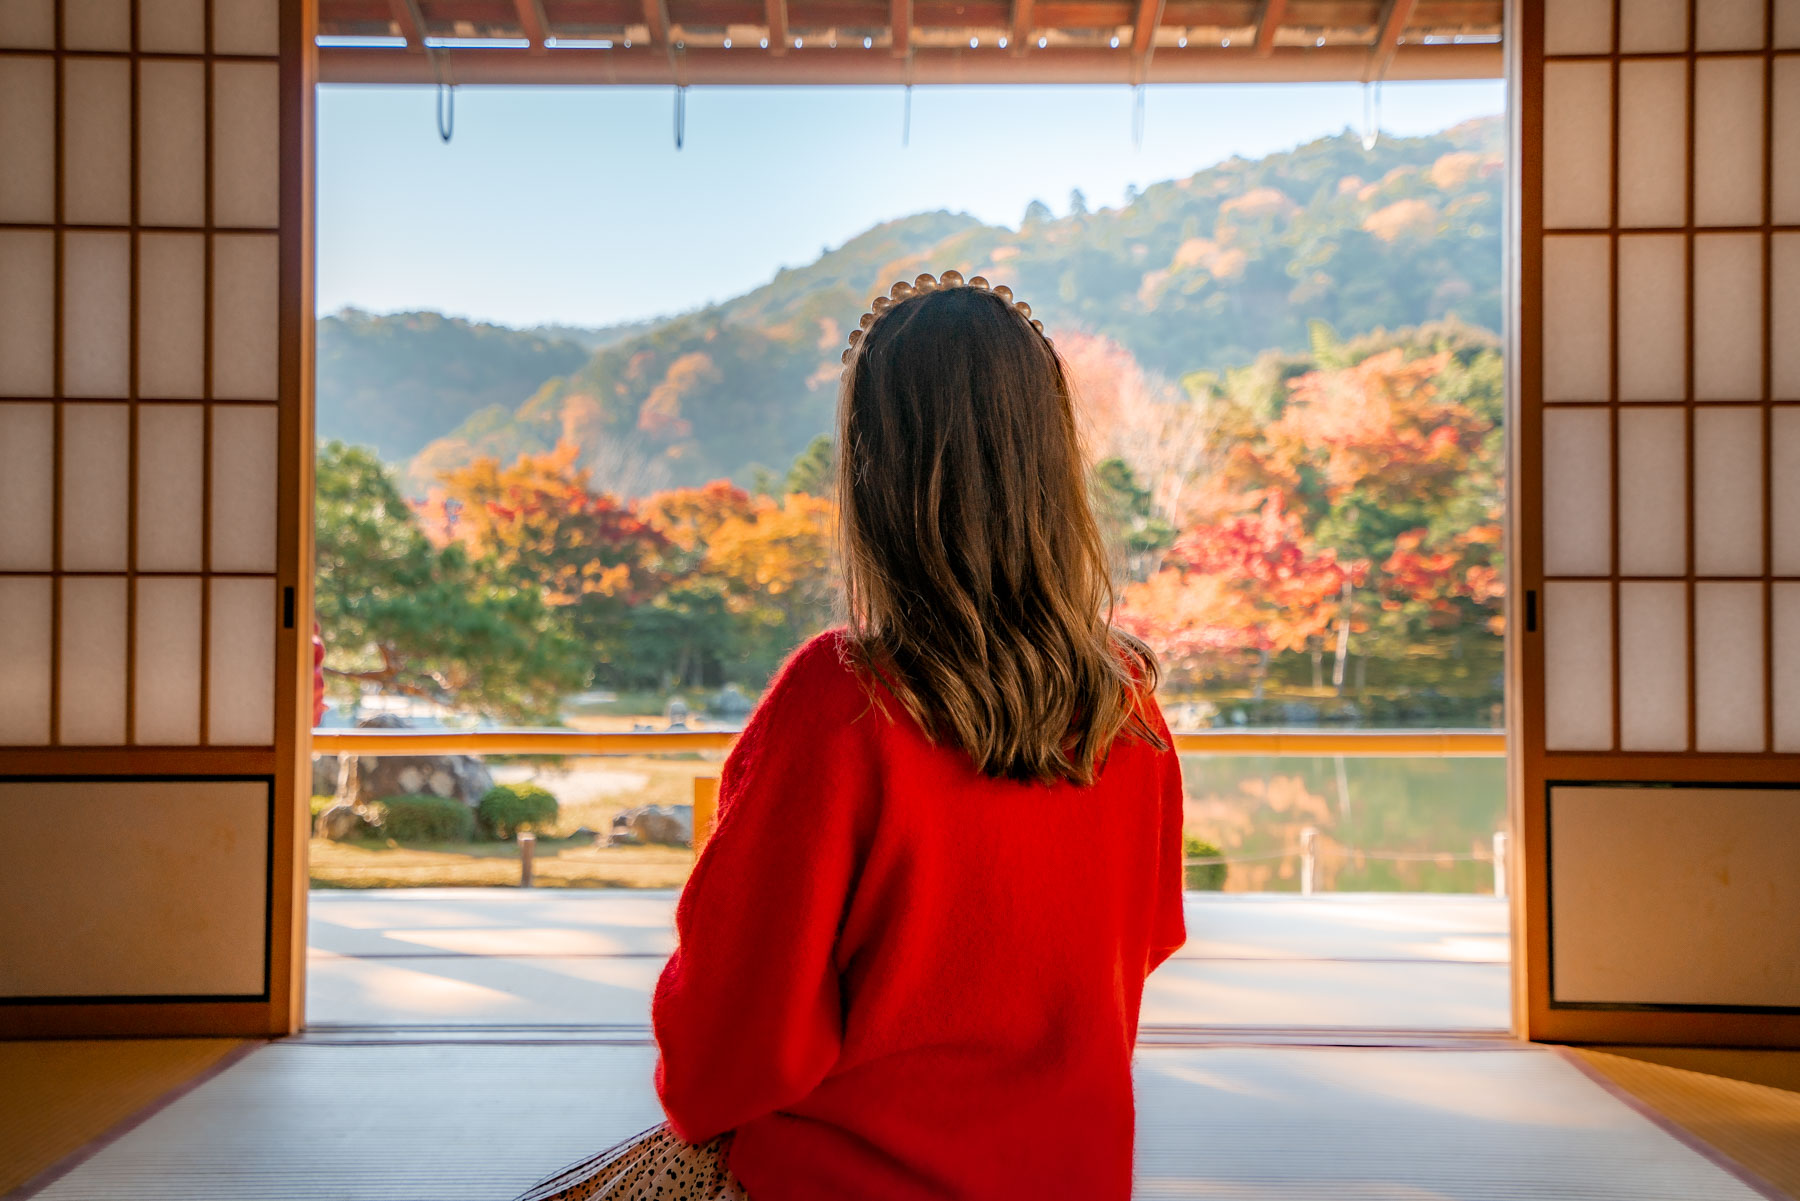 Eikando Temple in fall in Kyoto